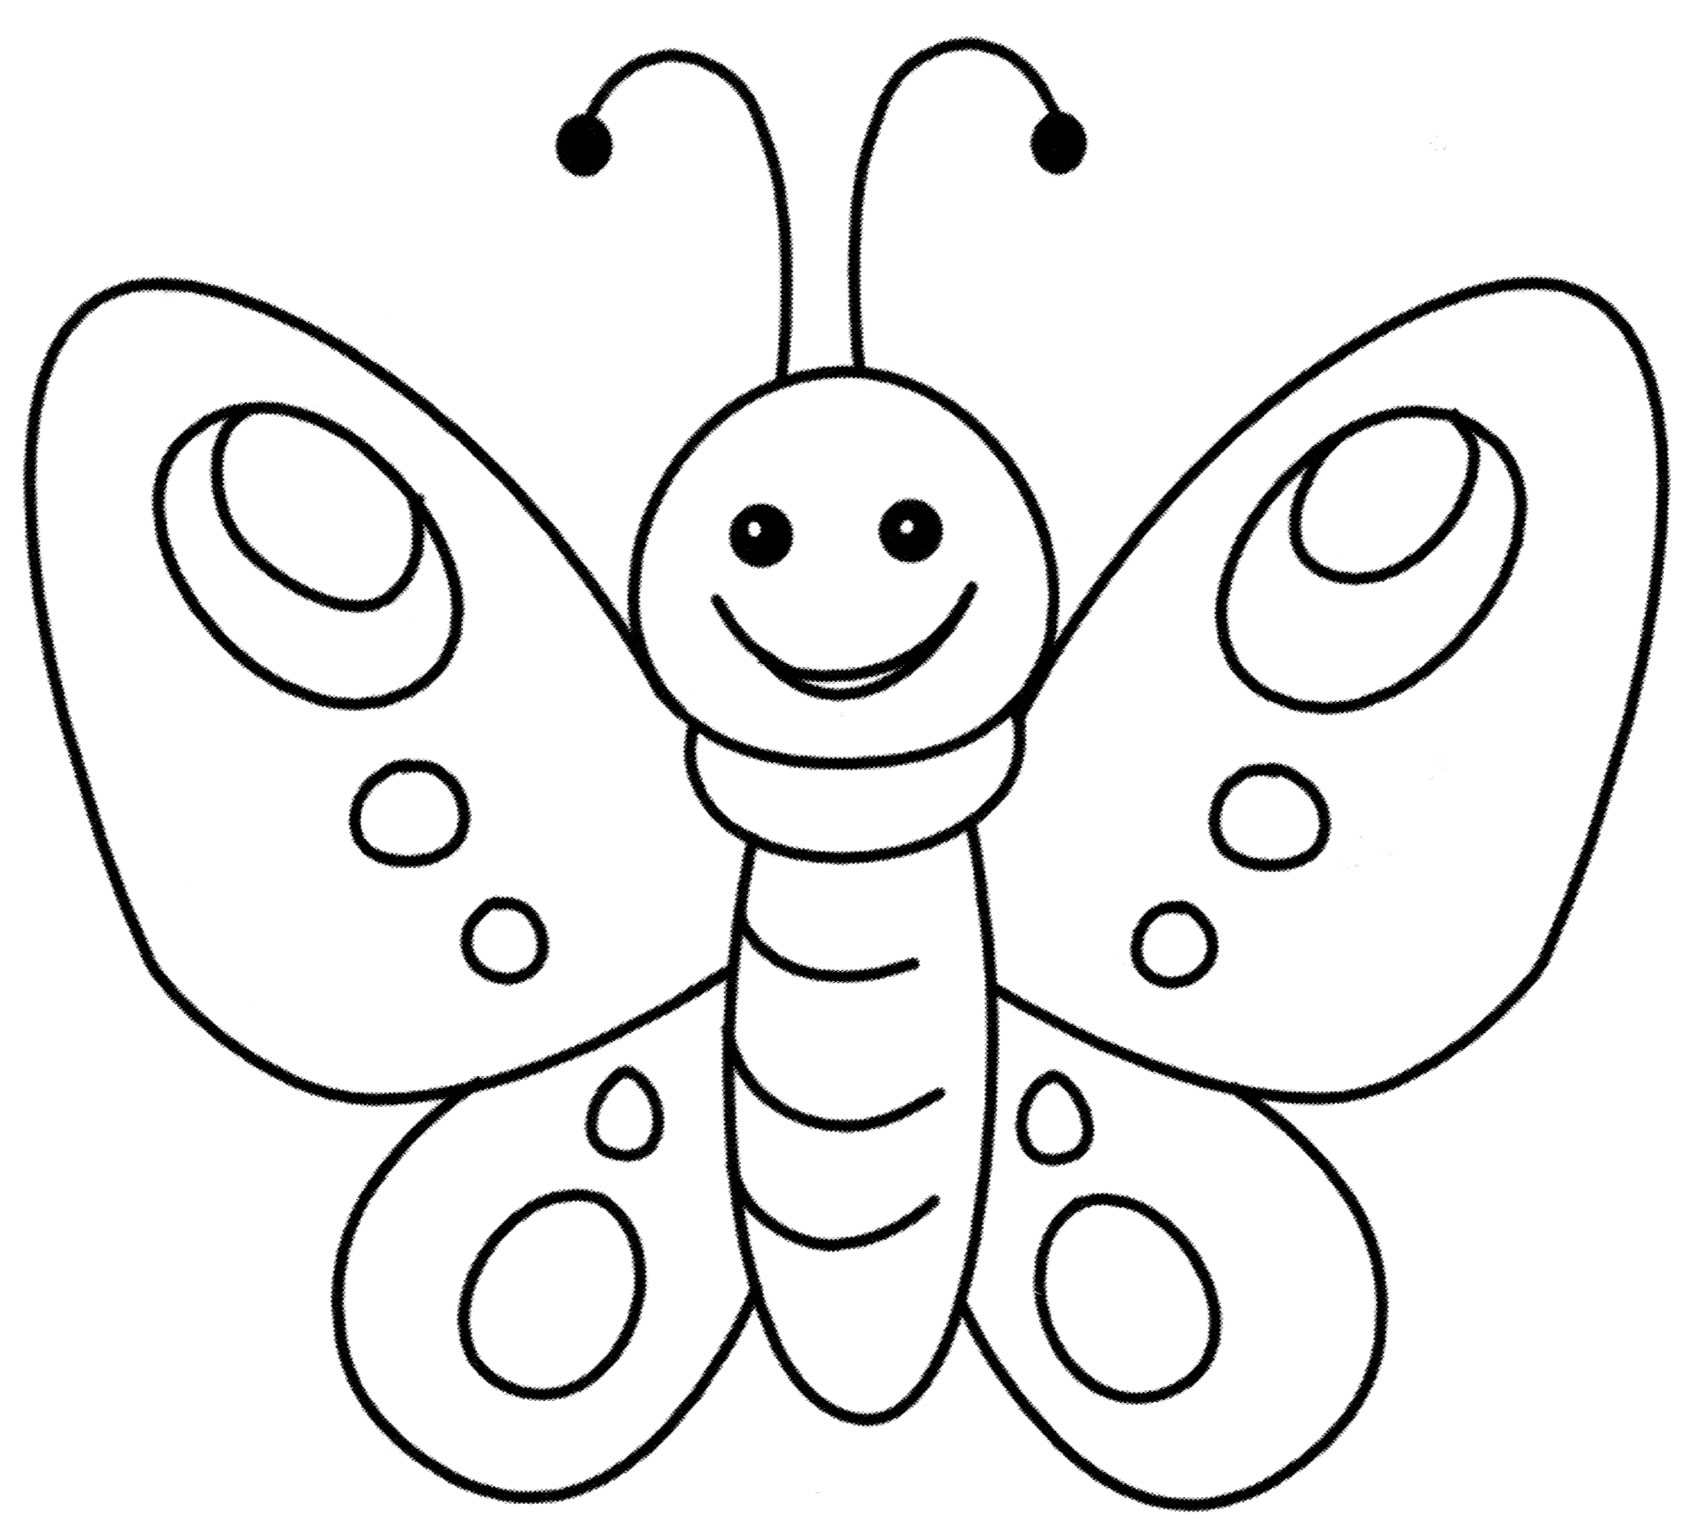 Раскраска 2 бабочки. Раскраска "бабочки". Раскраски для детей. Бабочка раскраска для малышей. Бабочка для раскрашивания для детей.